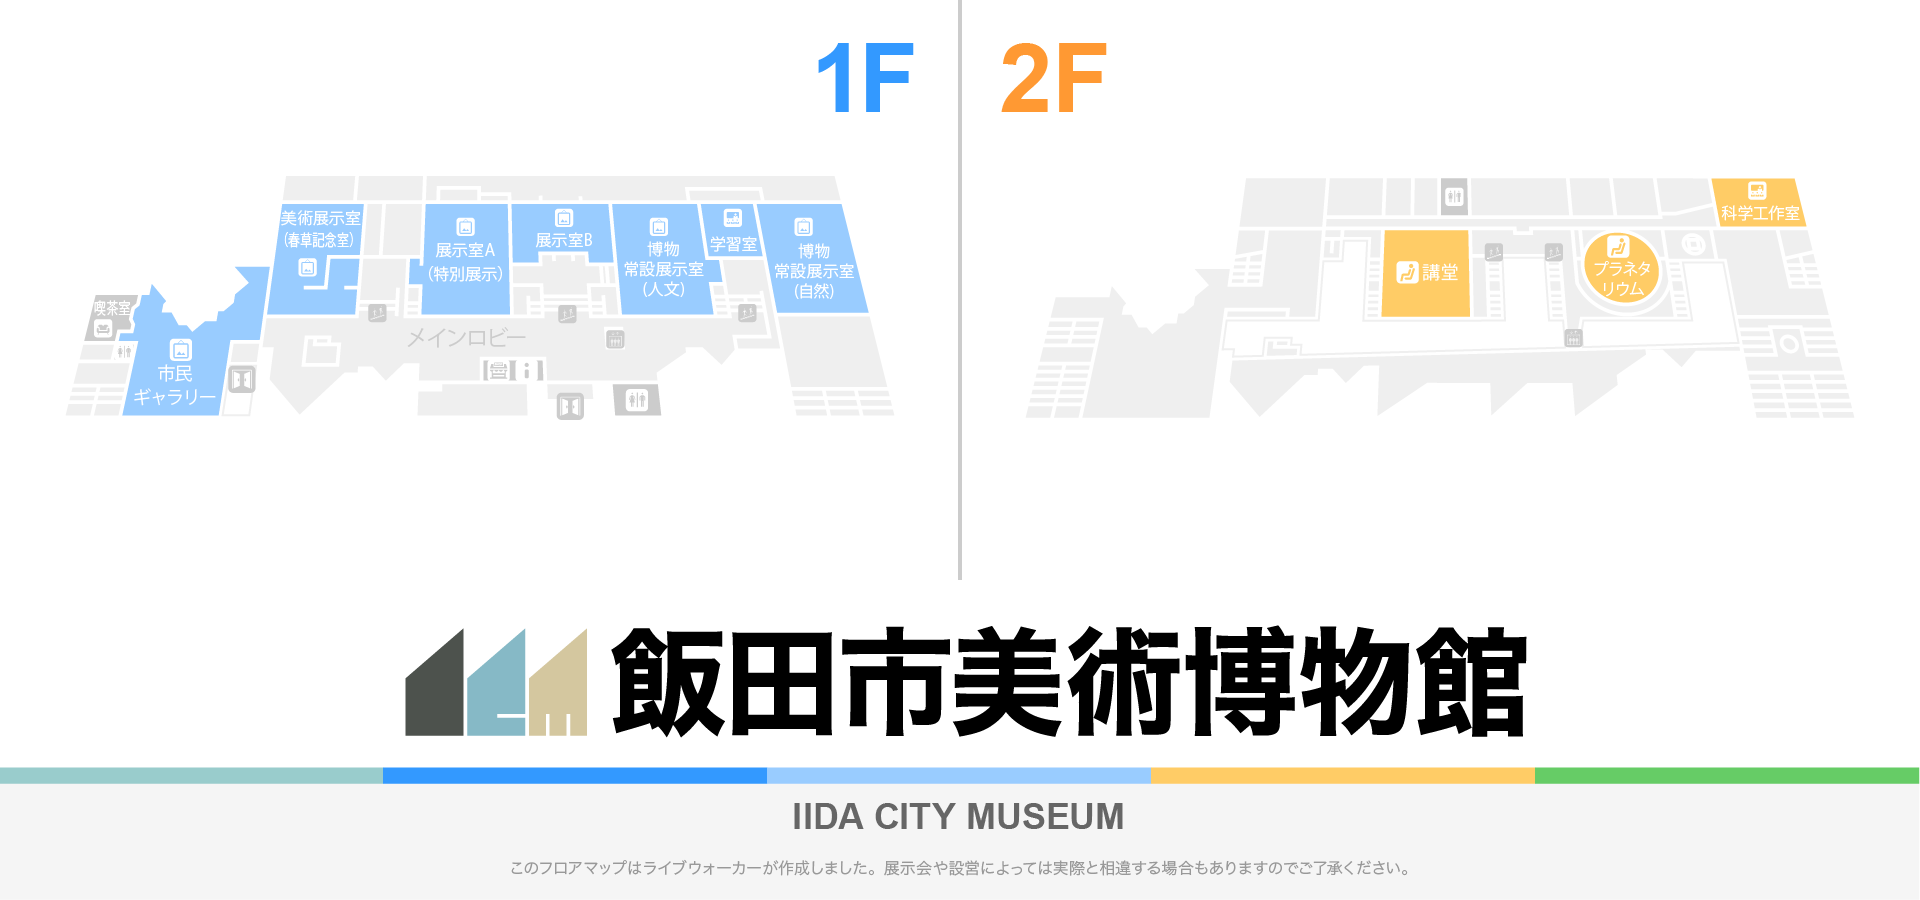 飯田市美術博物館のフロアマップ